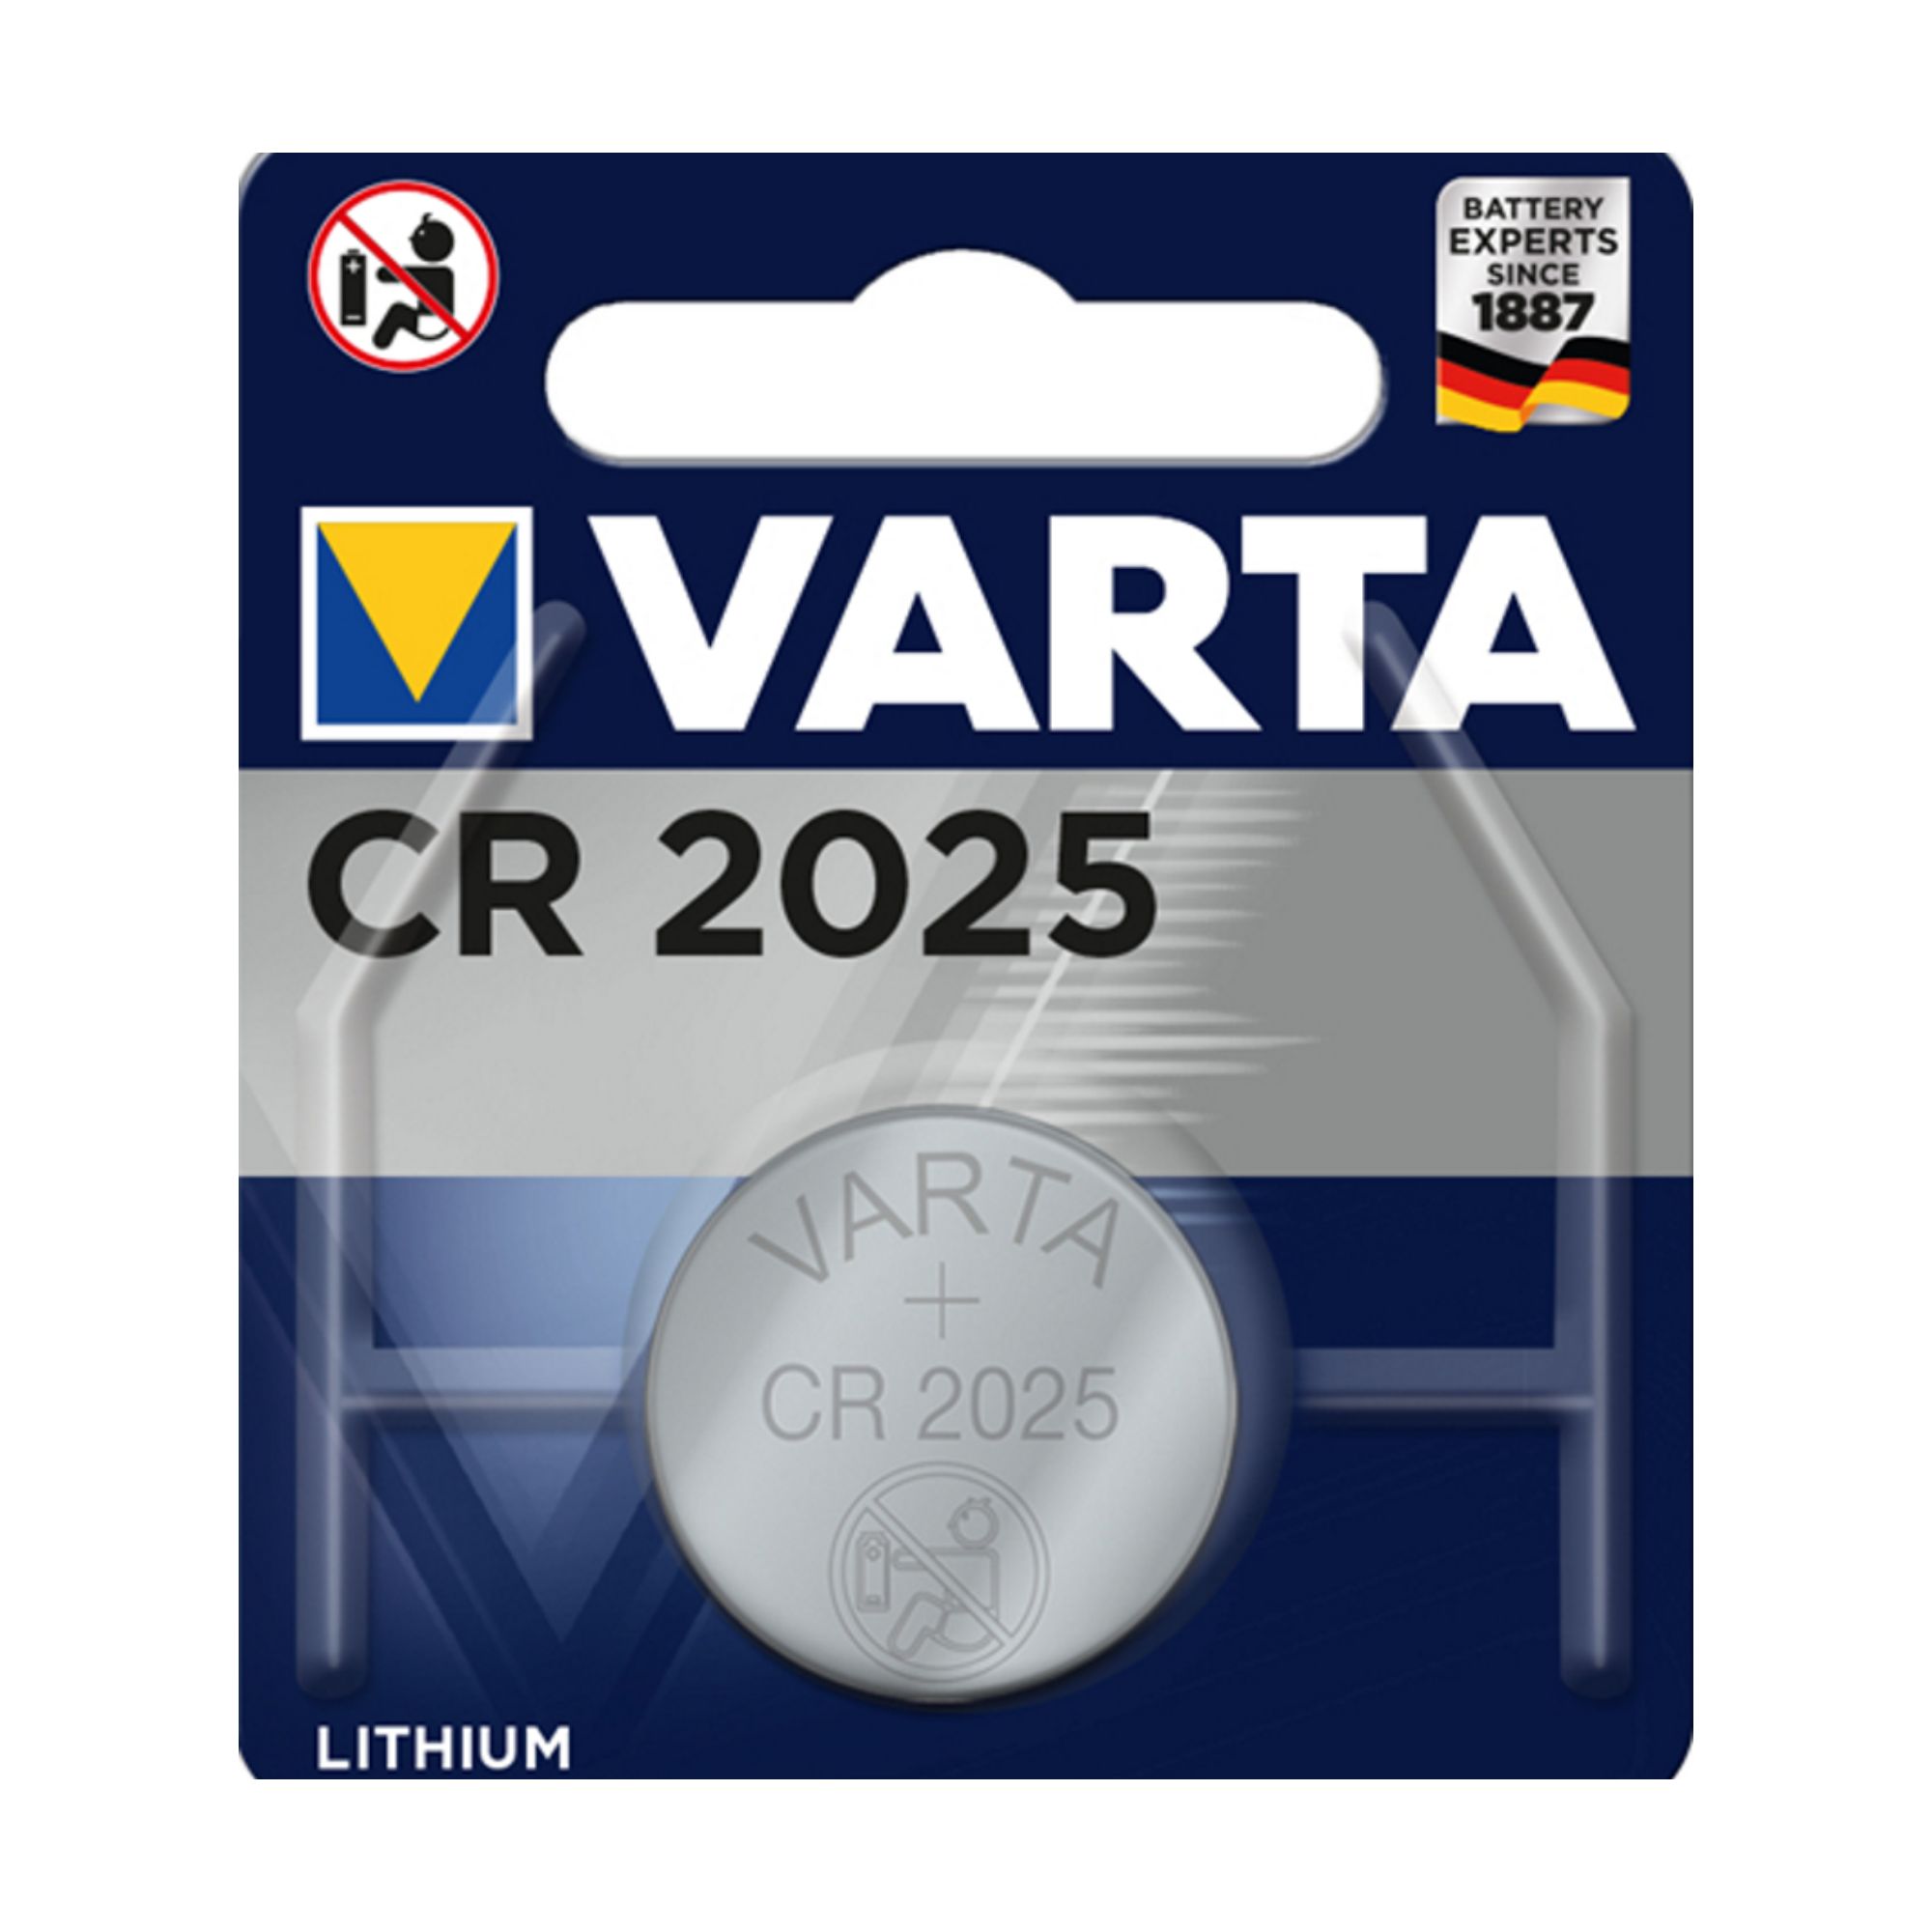 BL. 1 Pilha lithium CR1620 3V Varta